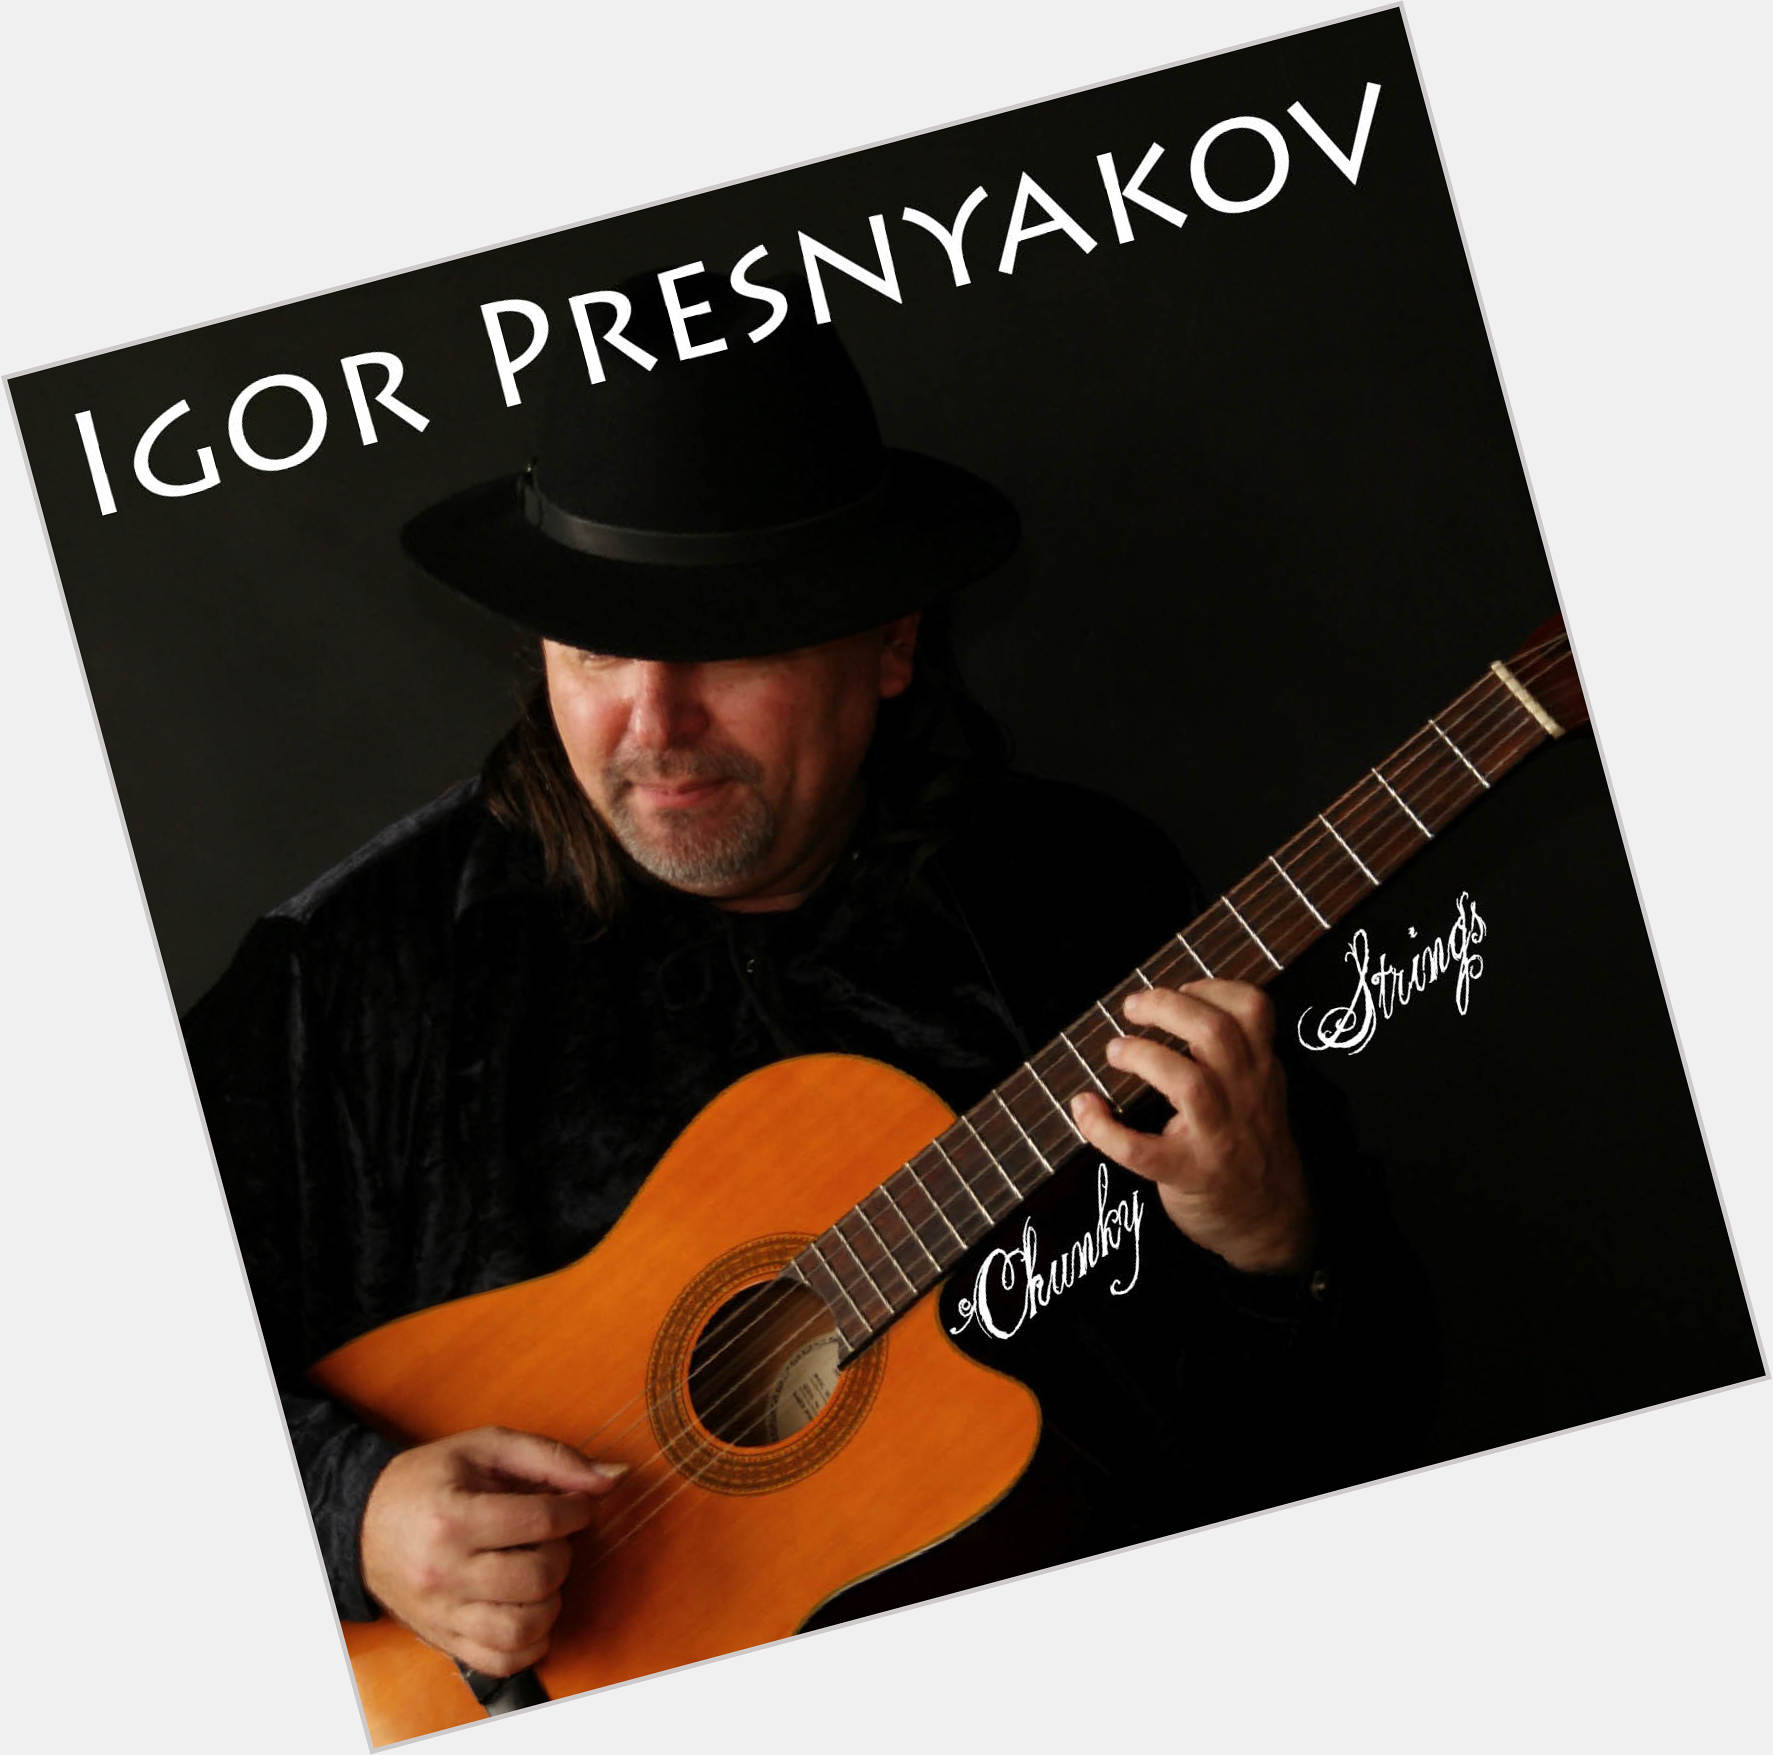 Igor Presnyakov dating 2